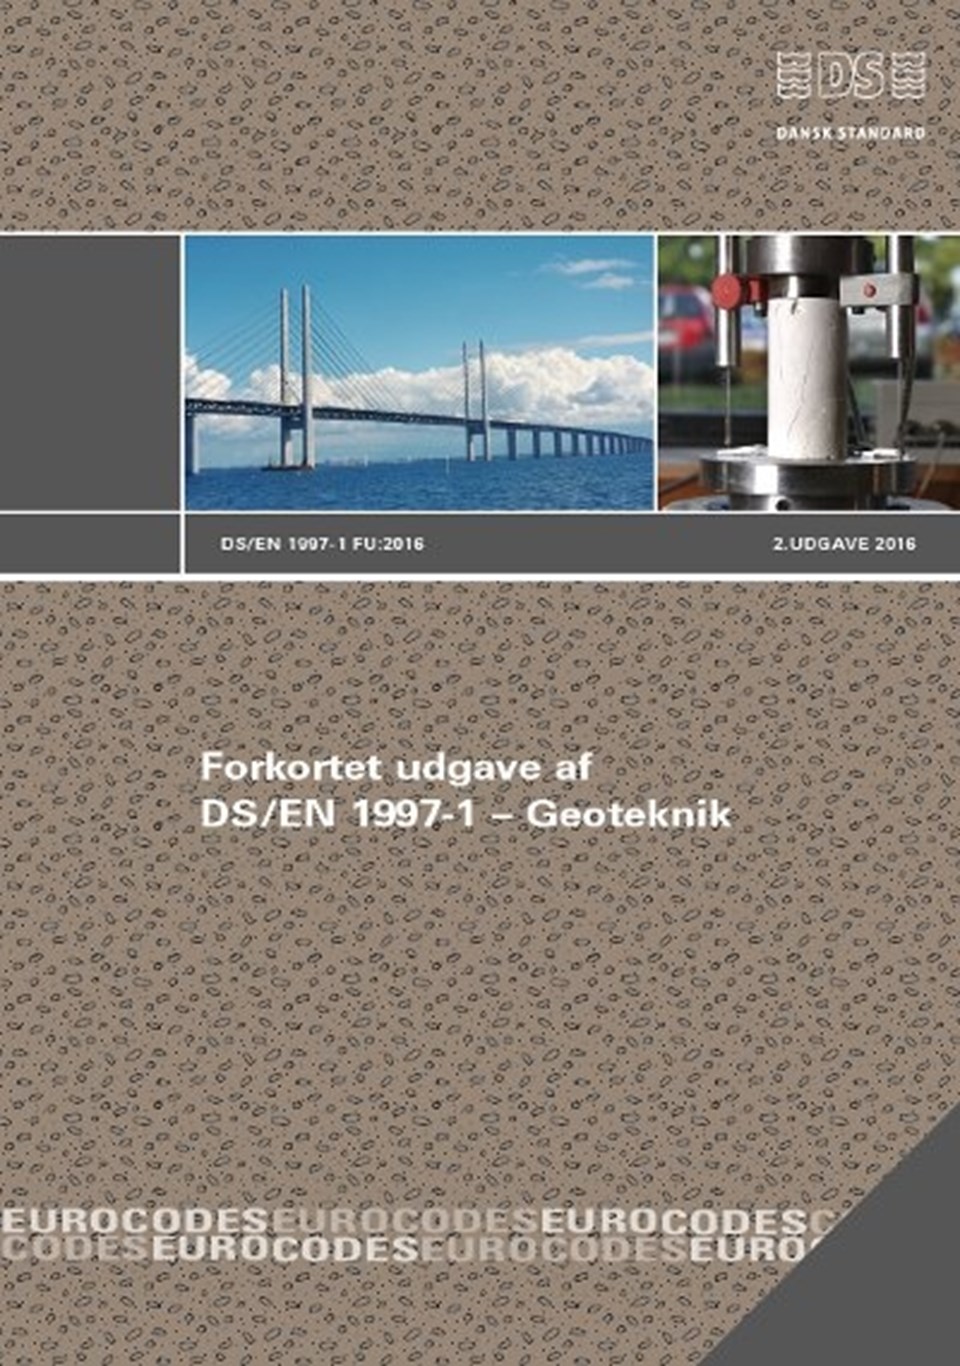 Forkortet udgave af DS/EN 1997-1 Geoteknik